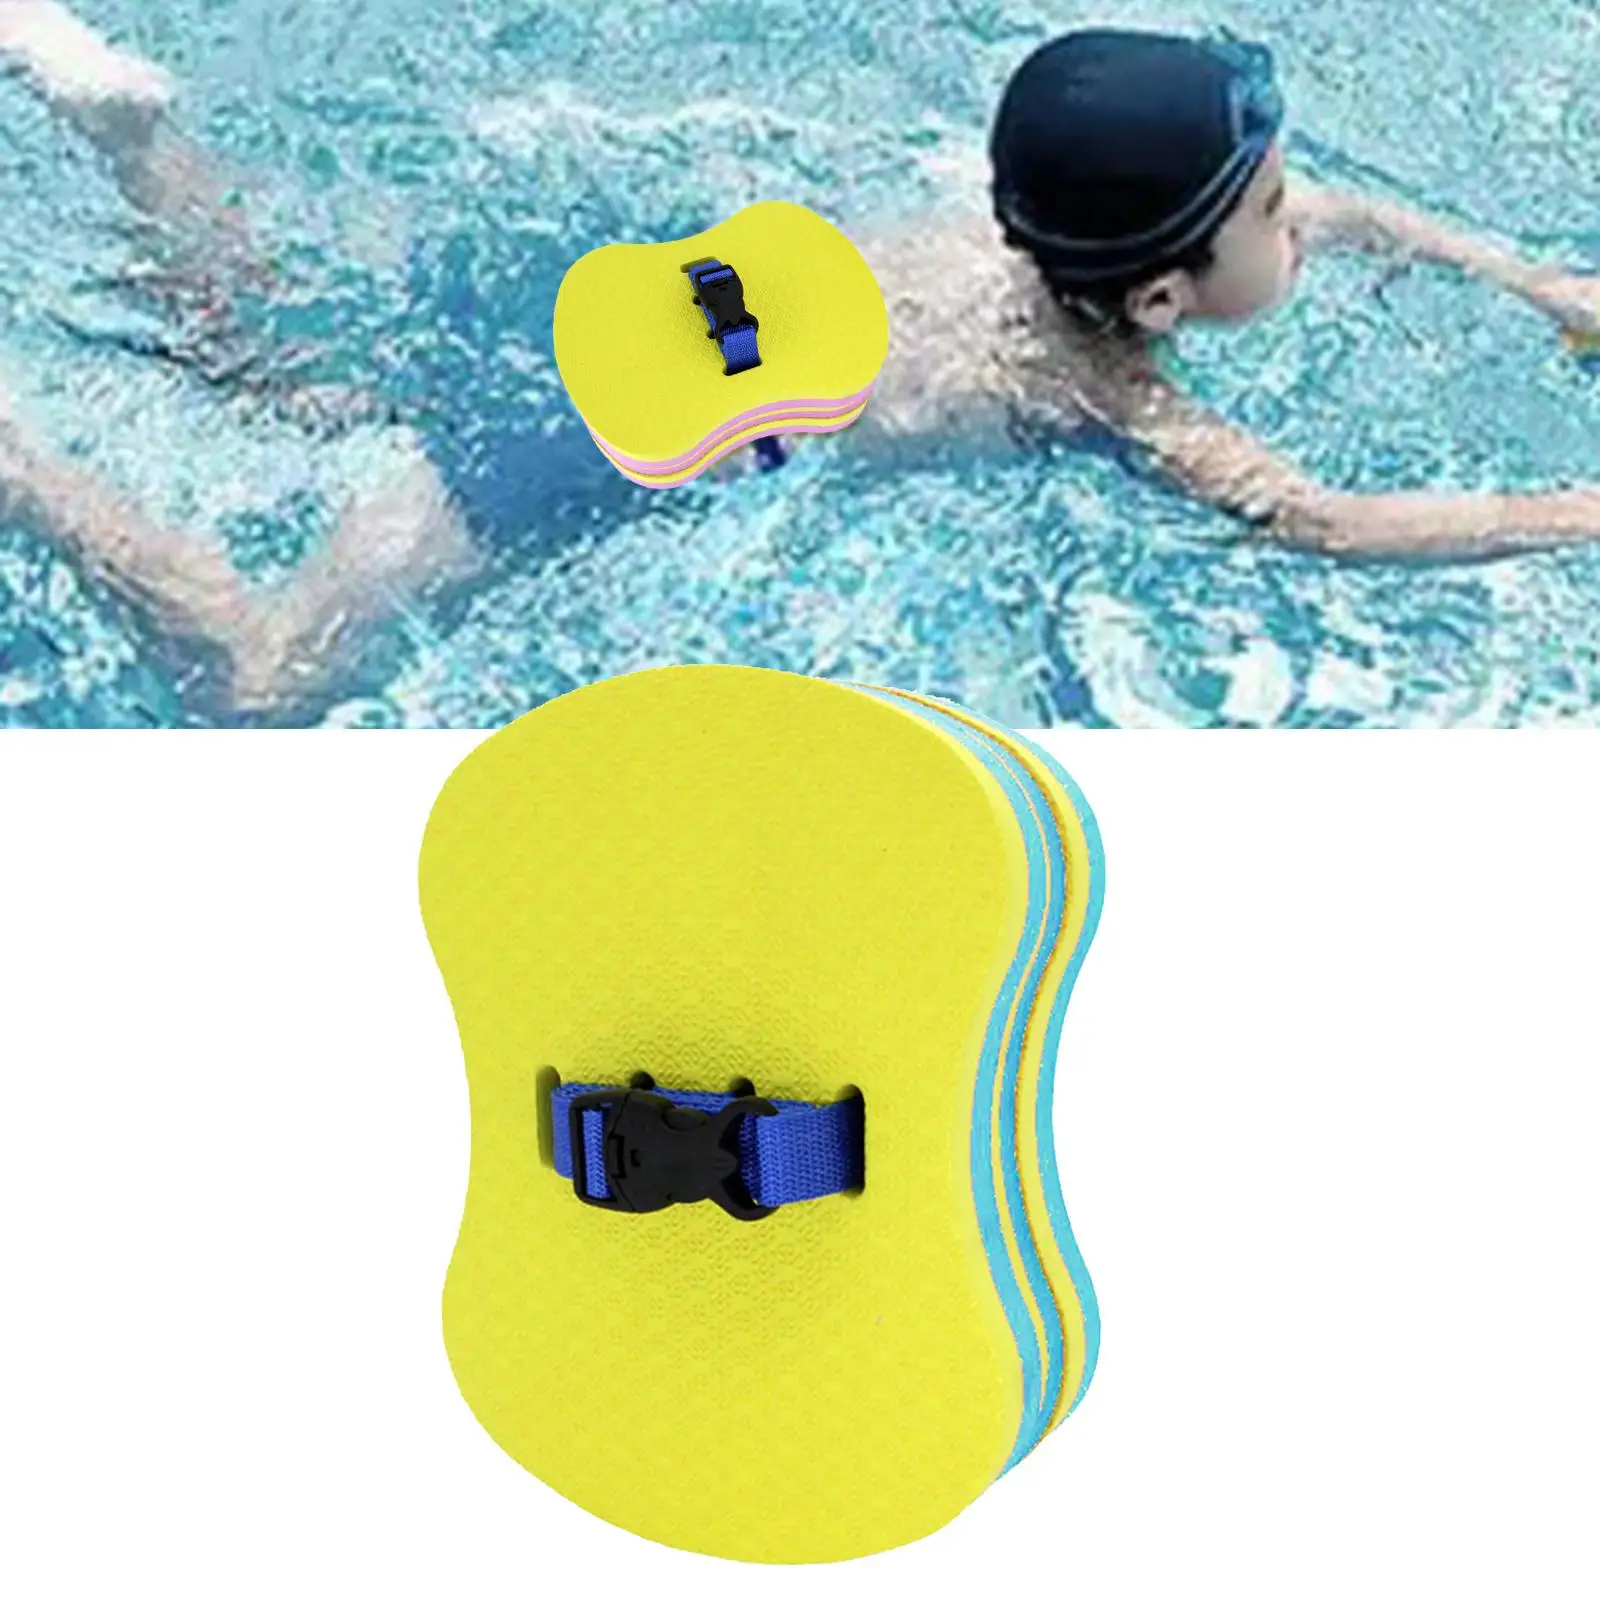 

Регулируемый задний плавающий ремень из пенопласта для безопасного плавания и плавания, вспомогательное средство для плавания для современных плавающих водных видов спорта